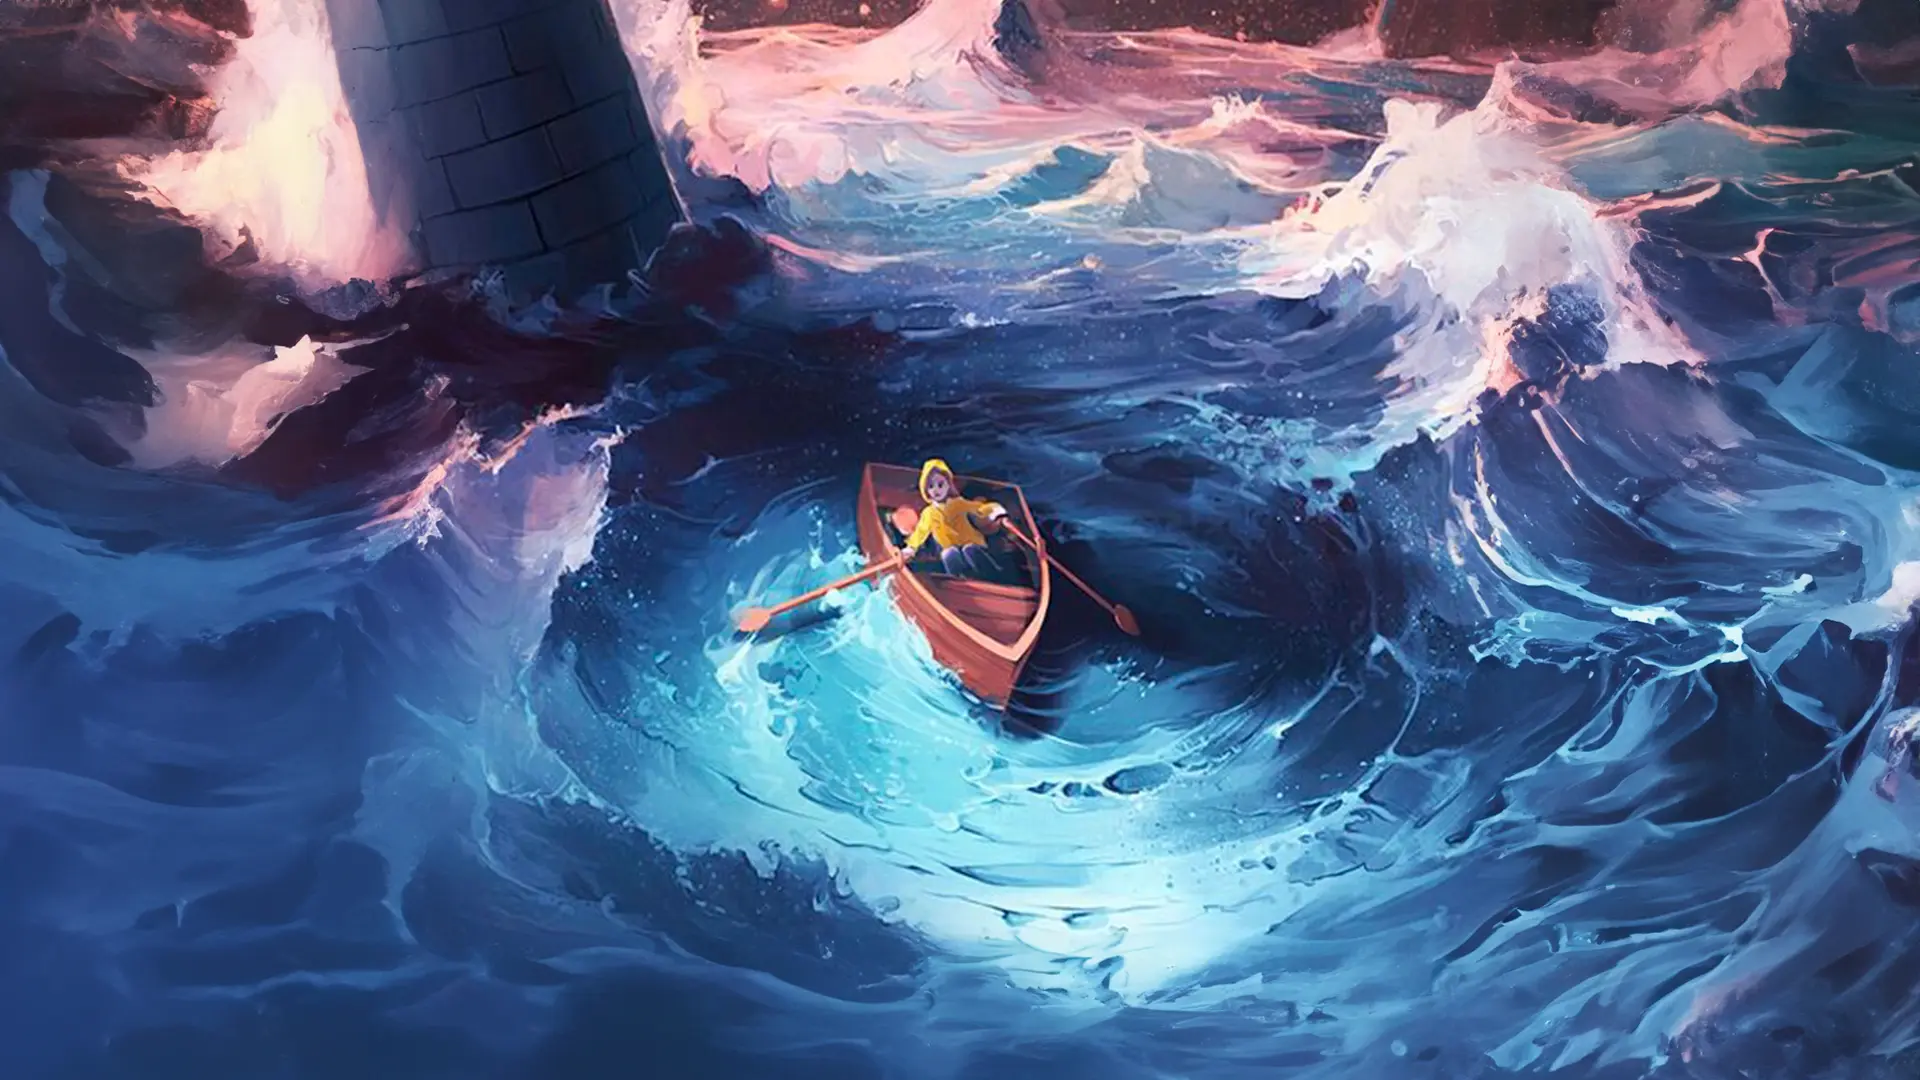 Homme sur une barque, en plein cœur d'une tempête au milieu de l'océan